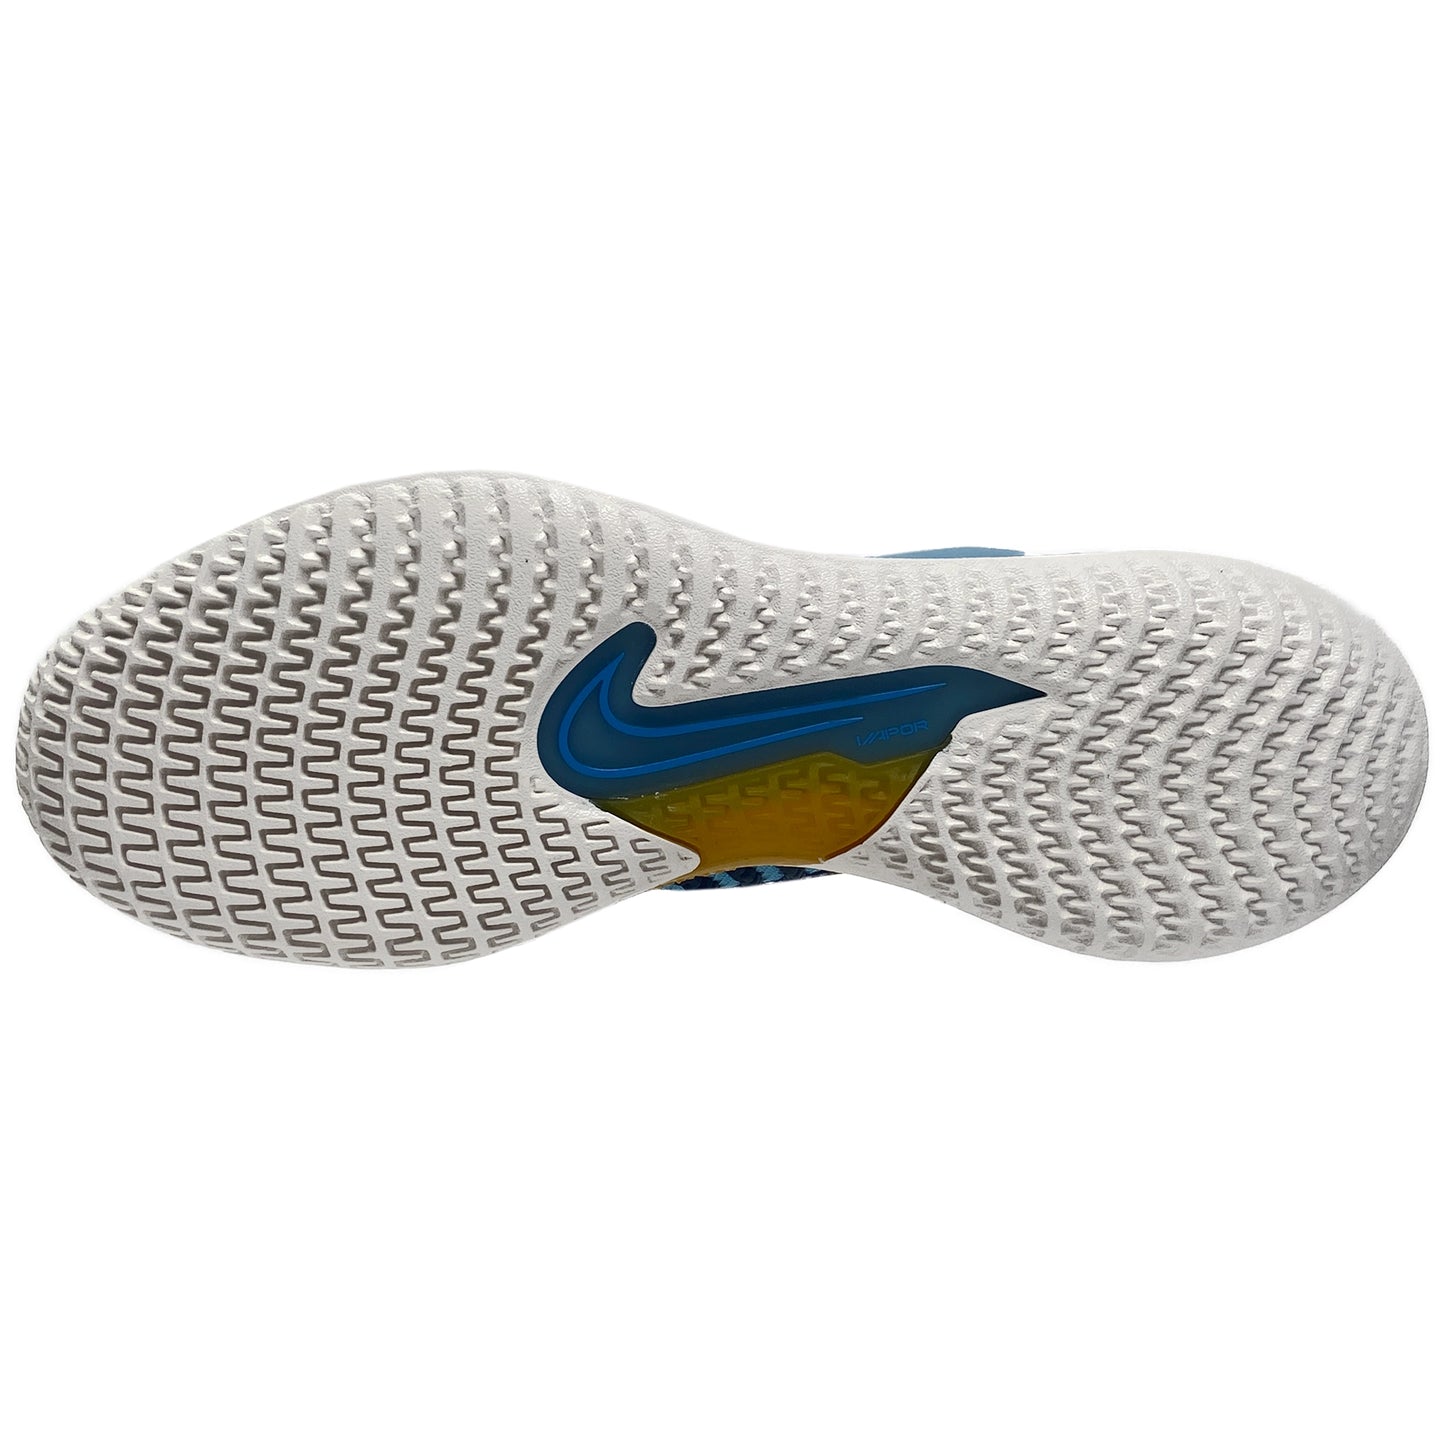 Nike Homme React Vapor NXT CV0724-401